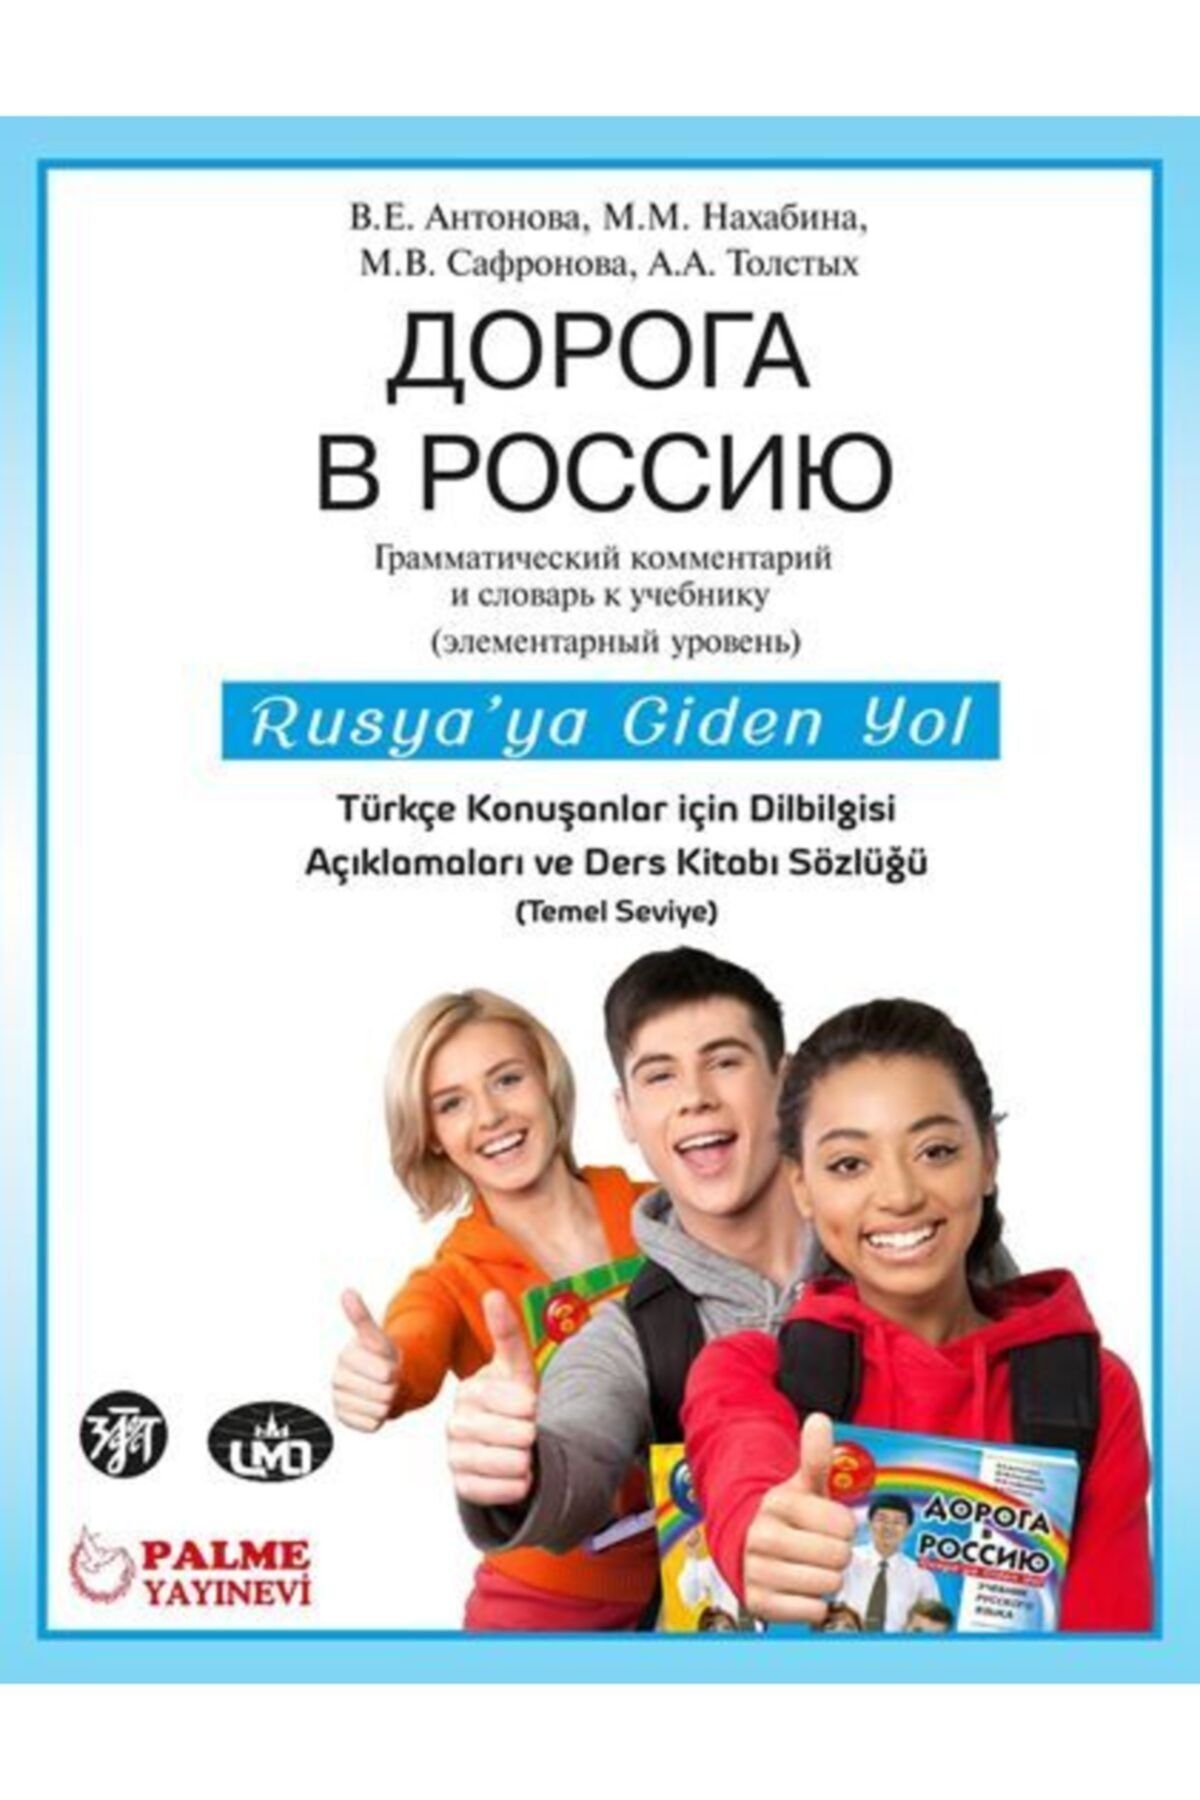 Palme Yayınevi Rusya'ya Giden Yol Türkçe Konuşanlar Için Dilbilgisi Açıklamaları Ve Ders Kitabı Sözlüğü